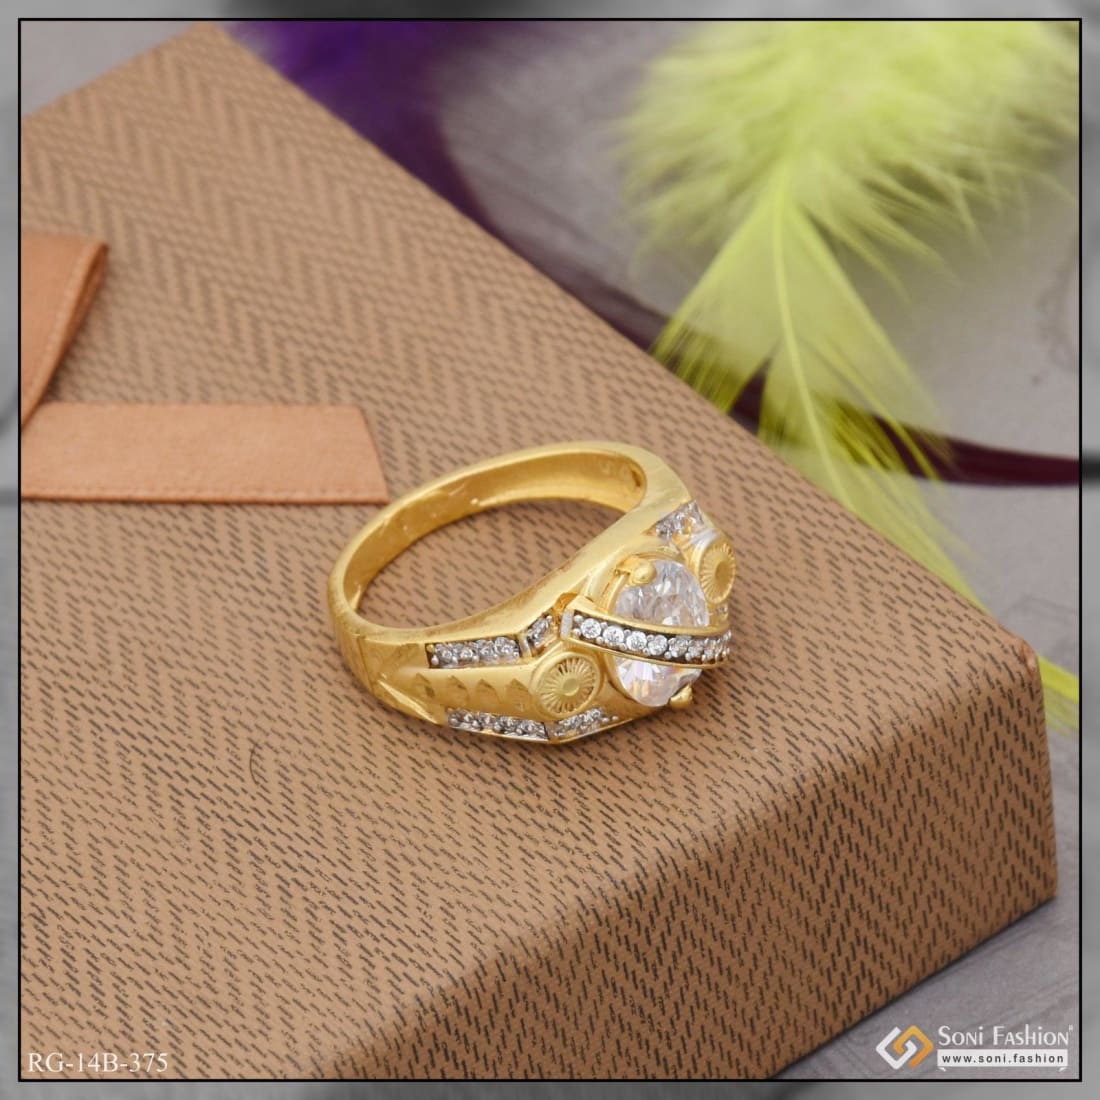 2 gram gold ring price 14k| Alibaba.com